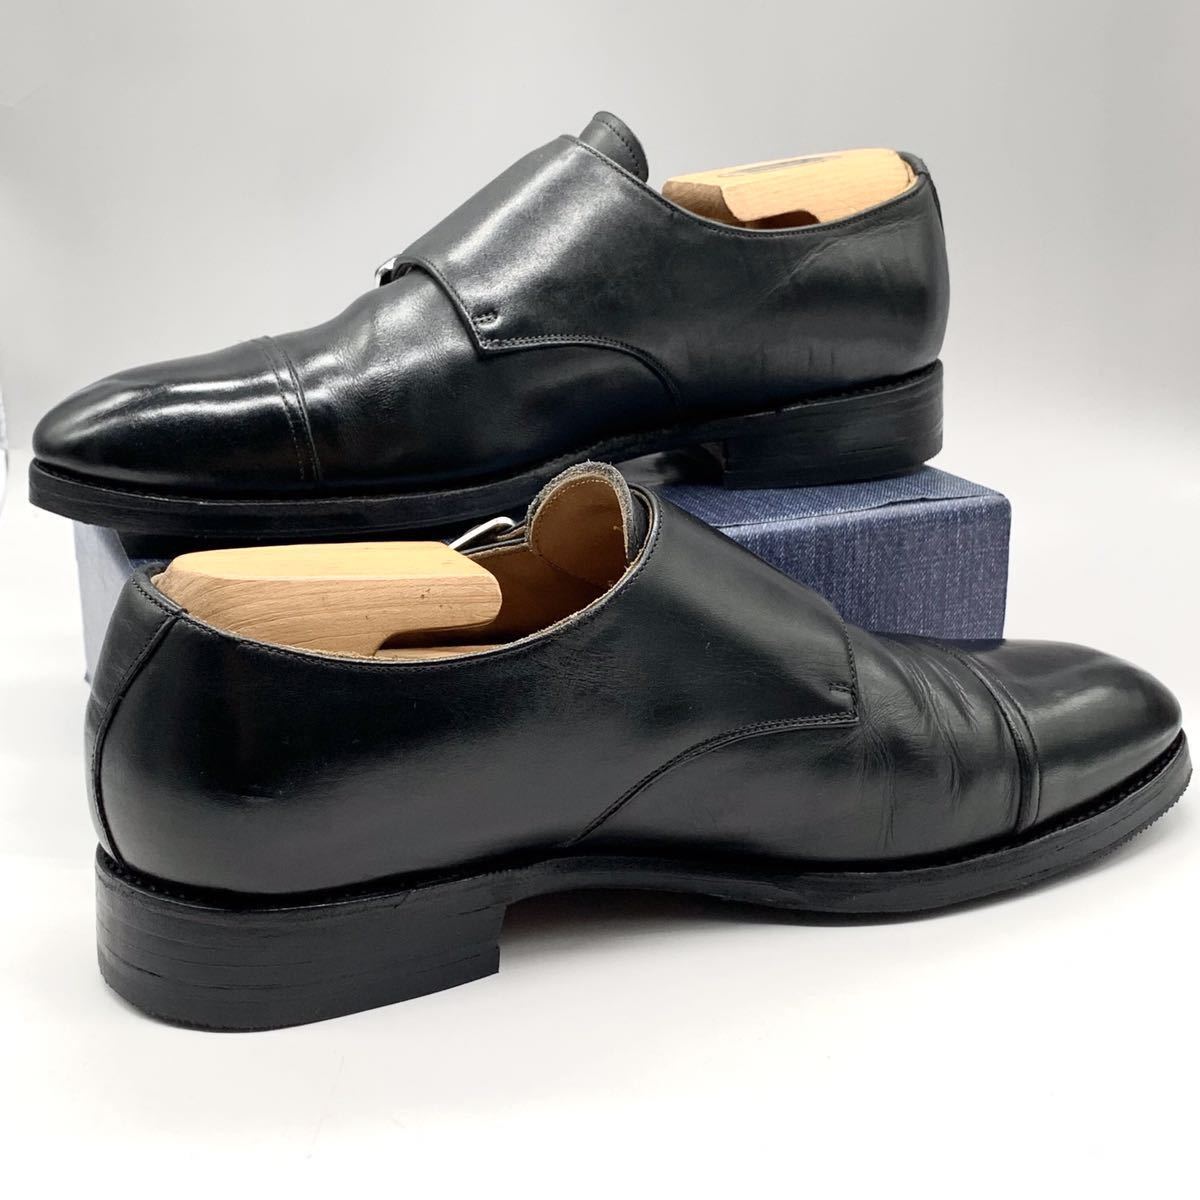 MEERMIN メルミン ドレスシューズ ダブルモンク ストラップ ストレートチップ レザー ブラック 黒 UK6.5 cm 革靴 メンズ